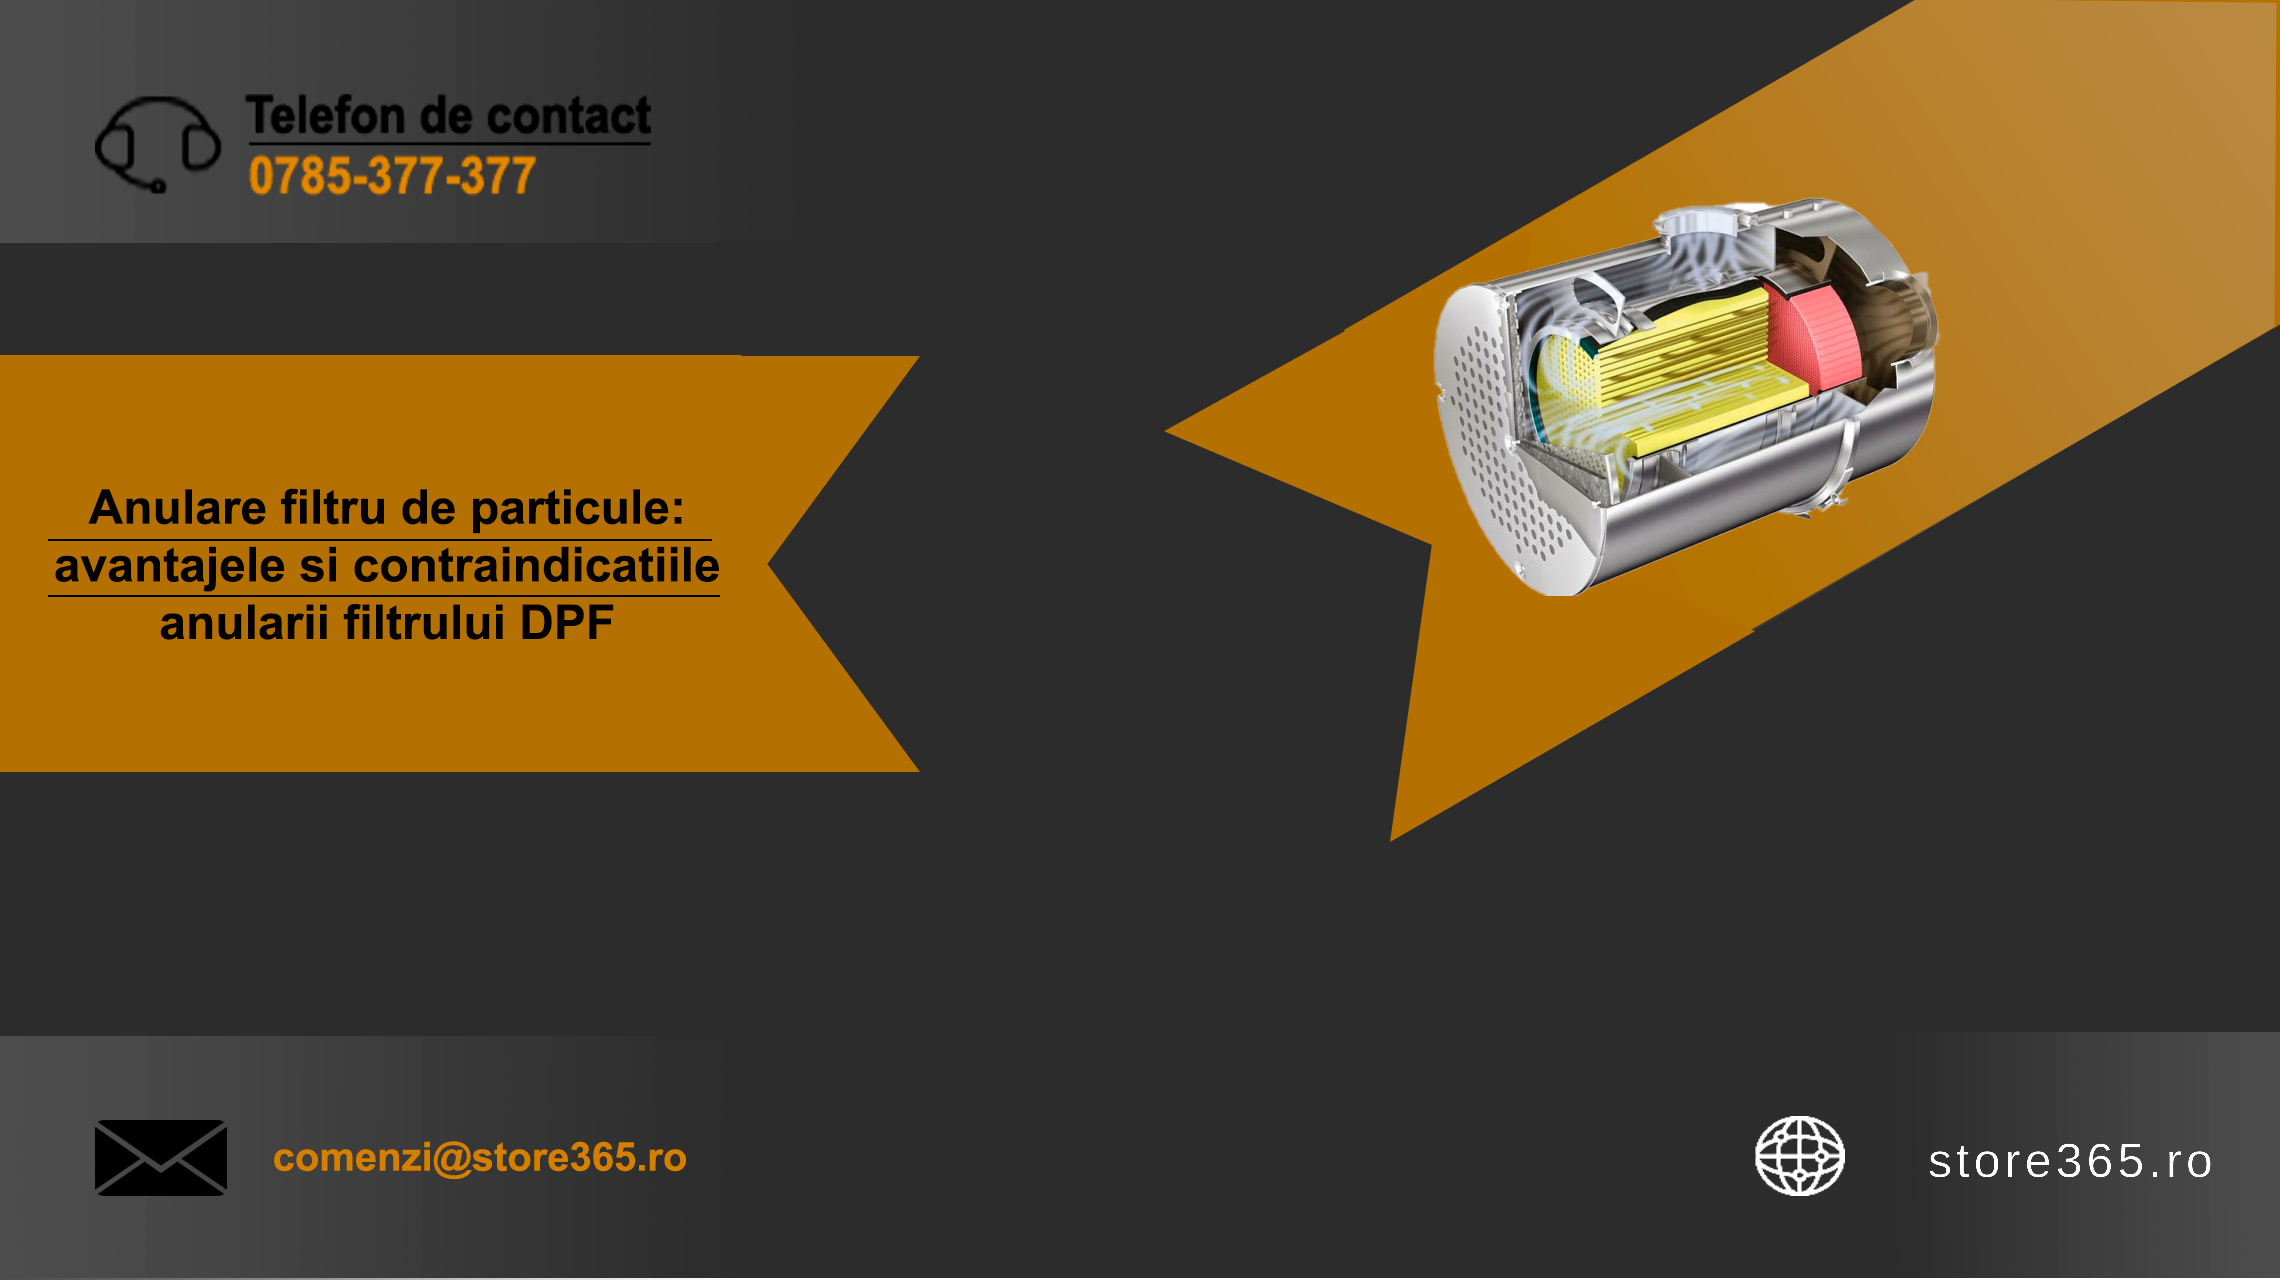 Anulare filtru de particule: avantajele si contraindicatiile anularii filtrului DPF